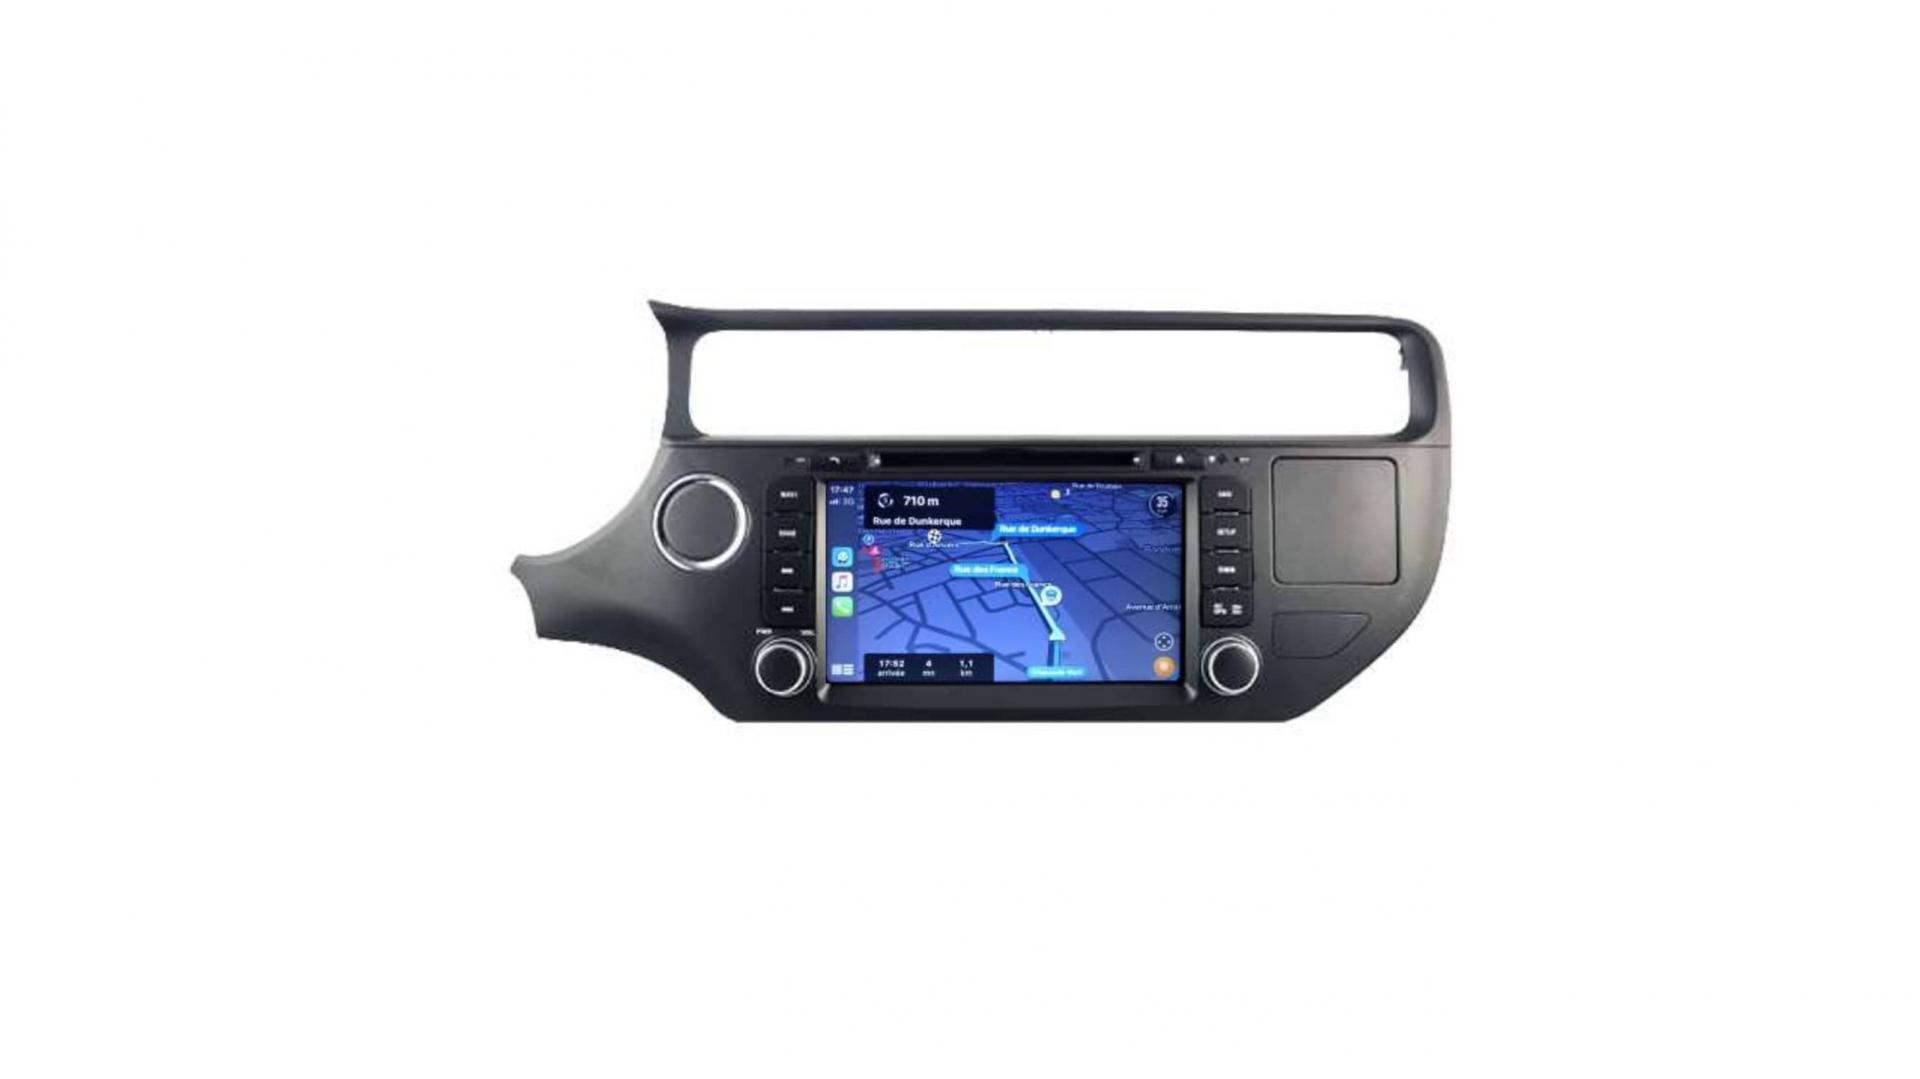 Autoradio androi d auto carplay gps bluetooth kia rio depuis 2015 3